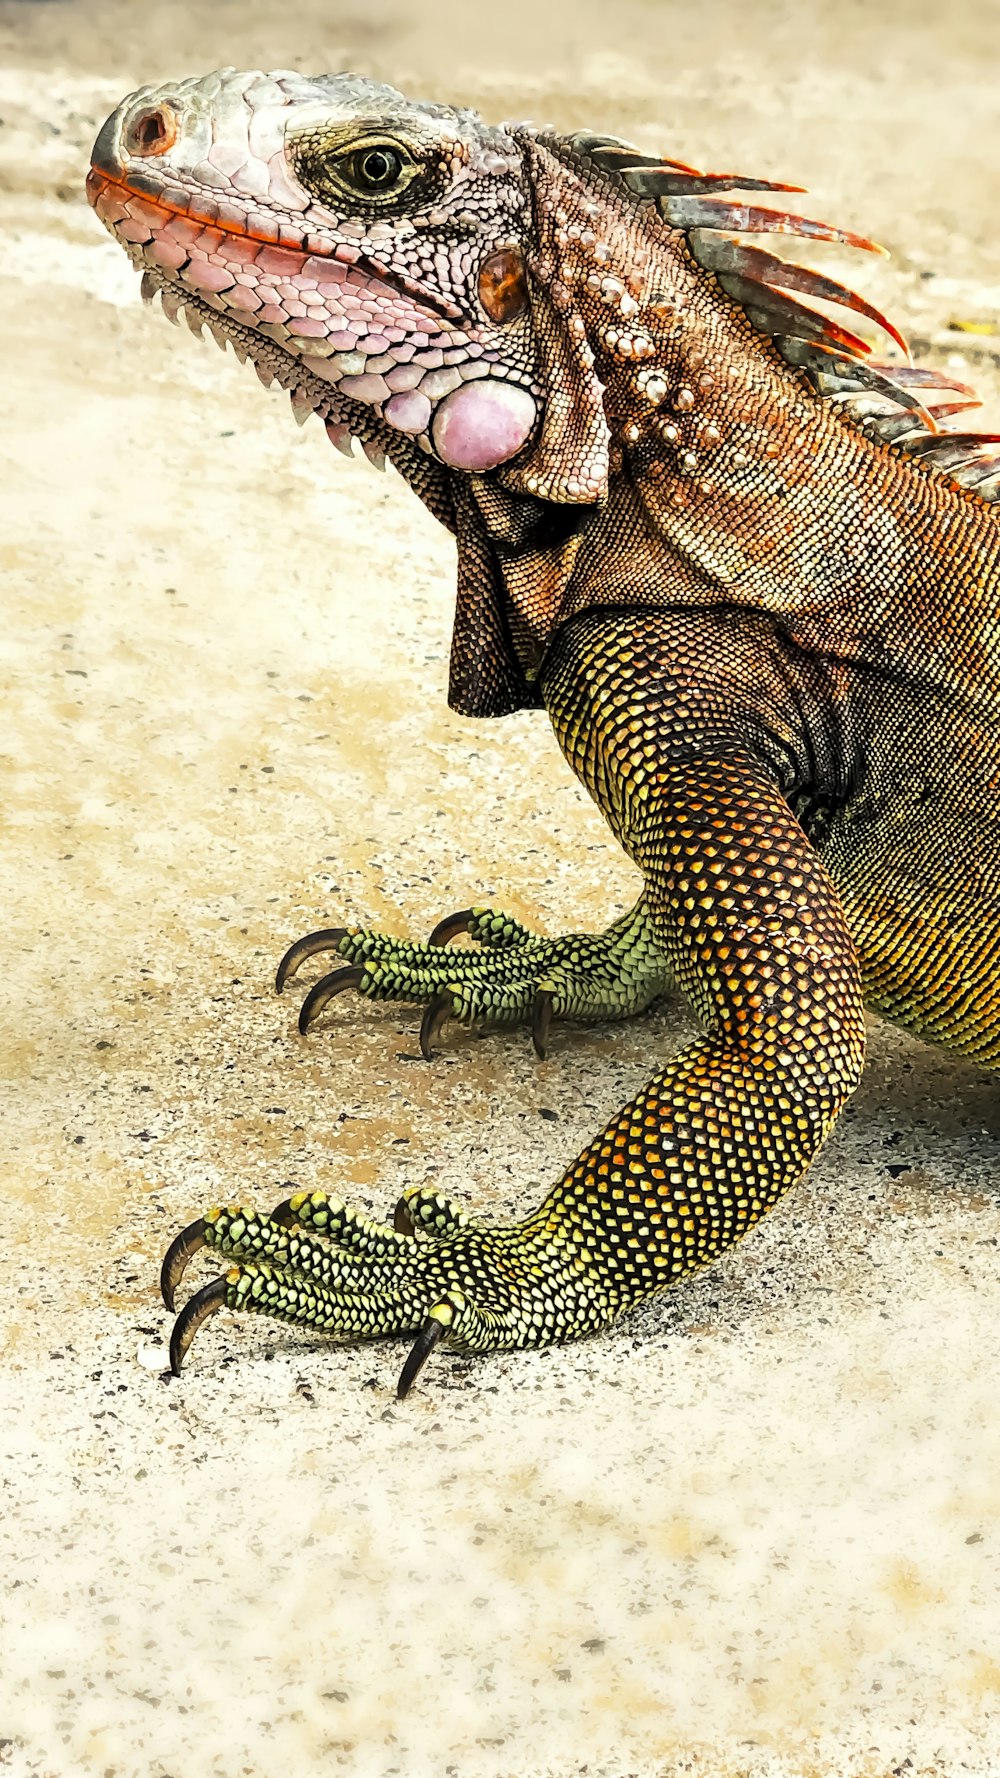 reptil verde y negro sobre arena blanca